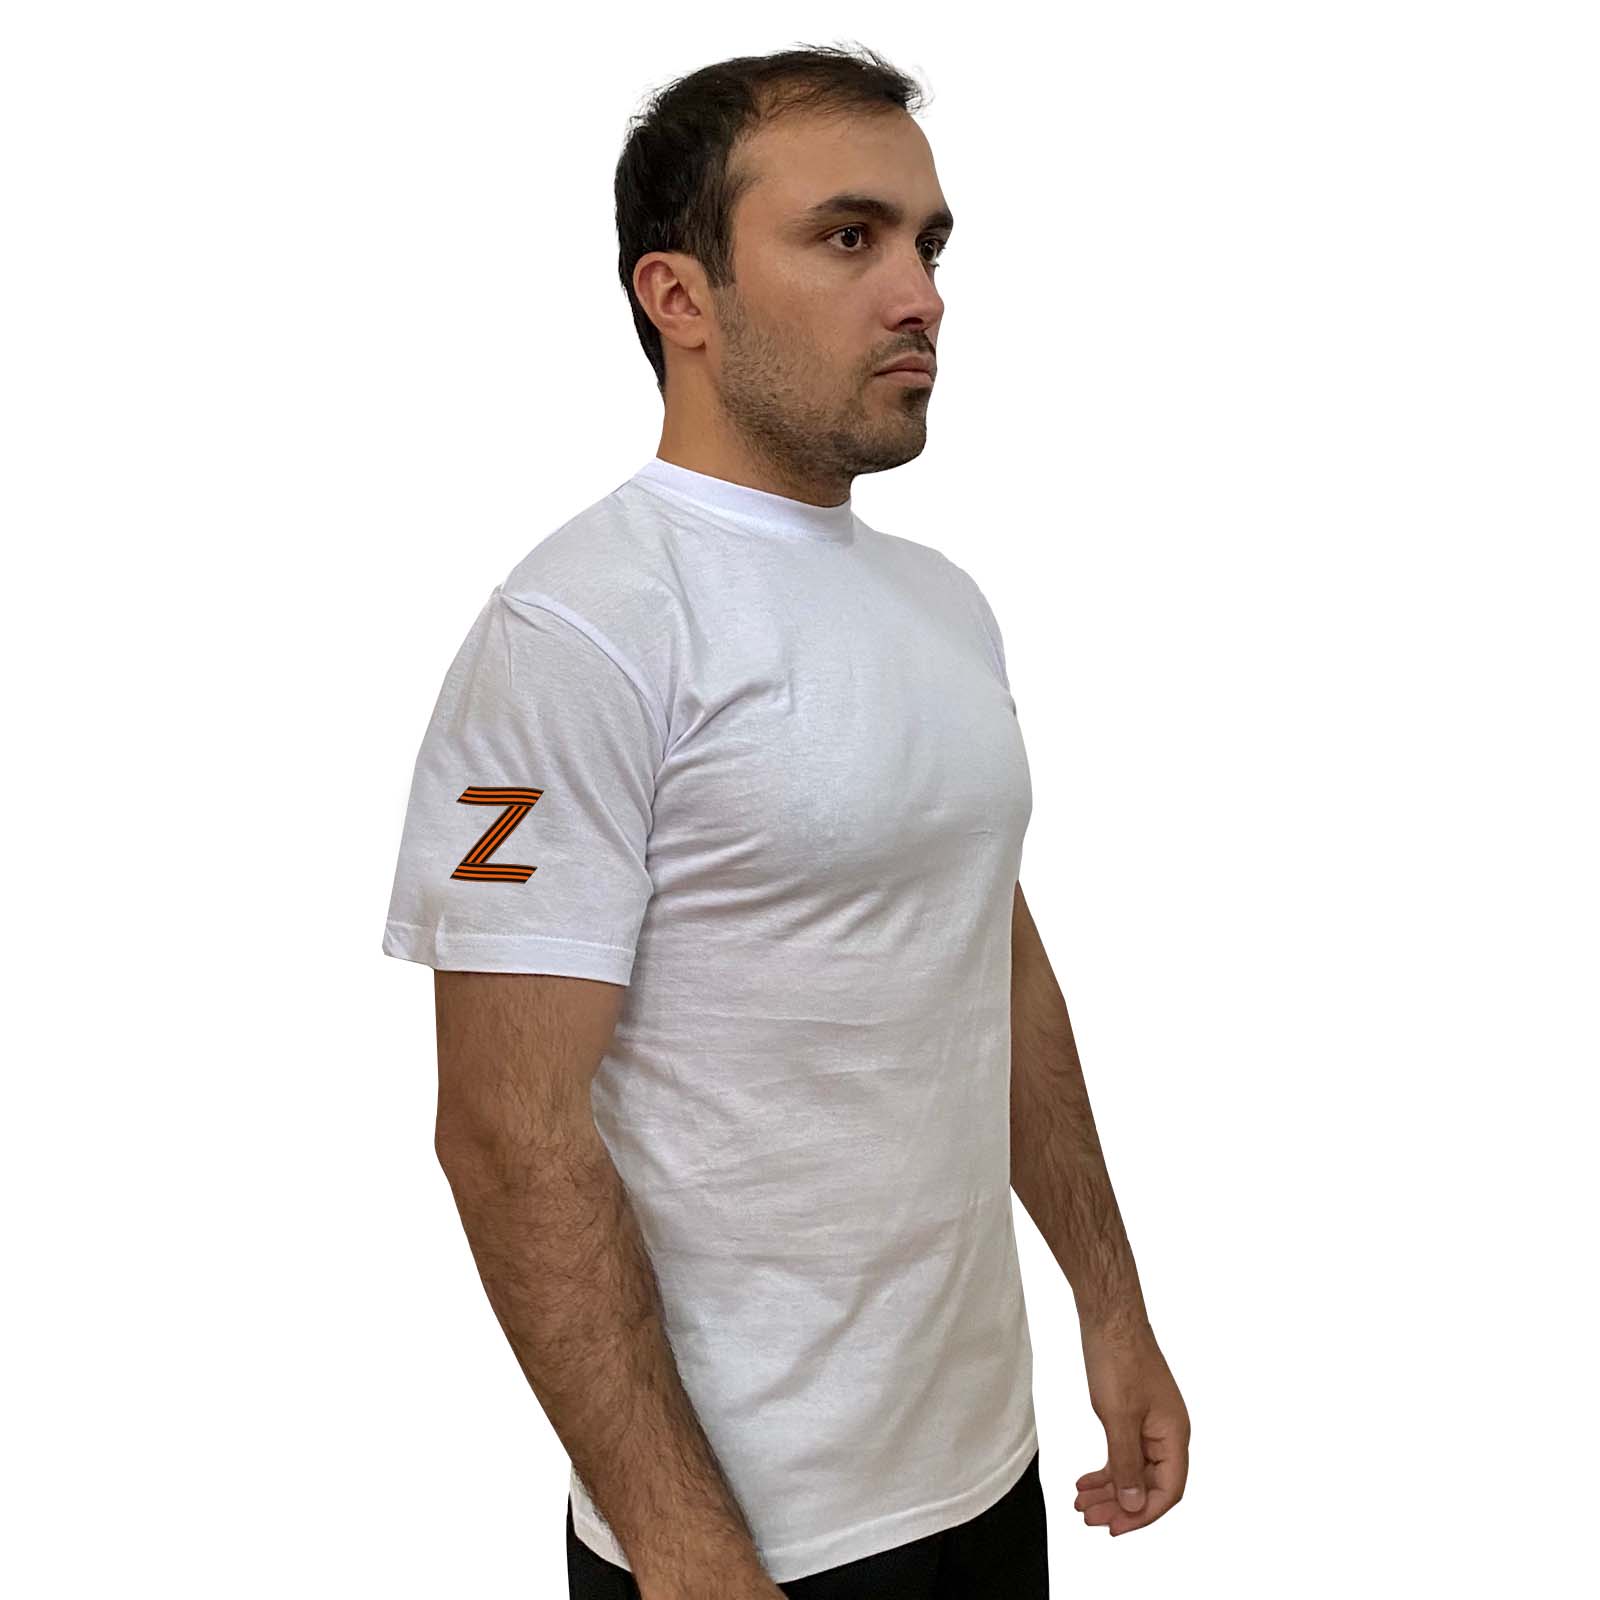 Мужская белая футболка с георгиевским Z на рукаве